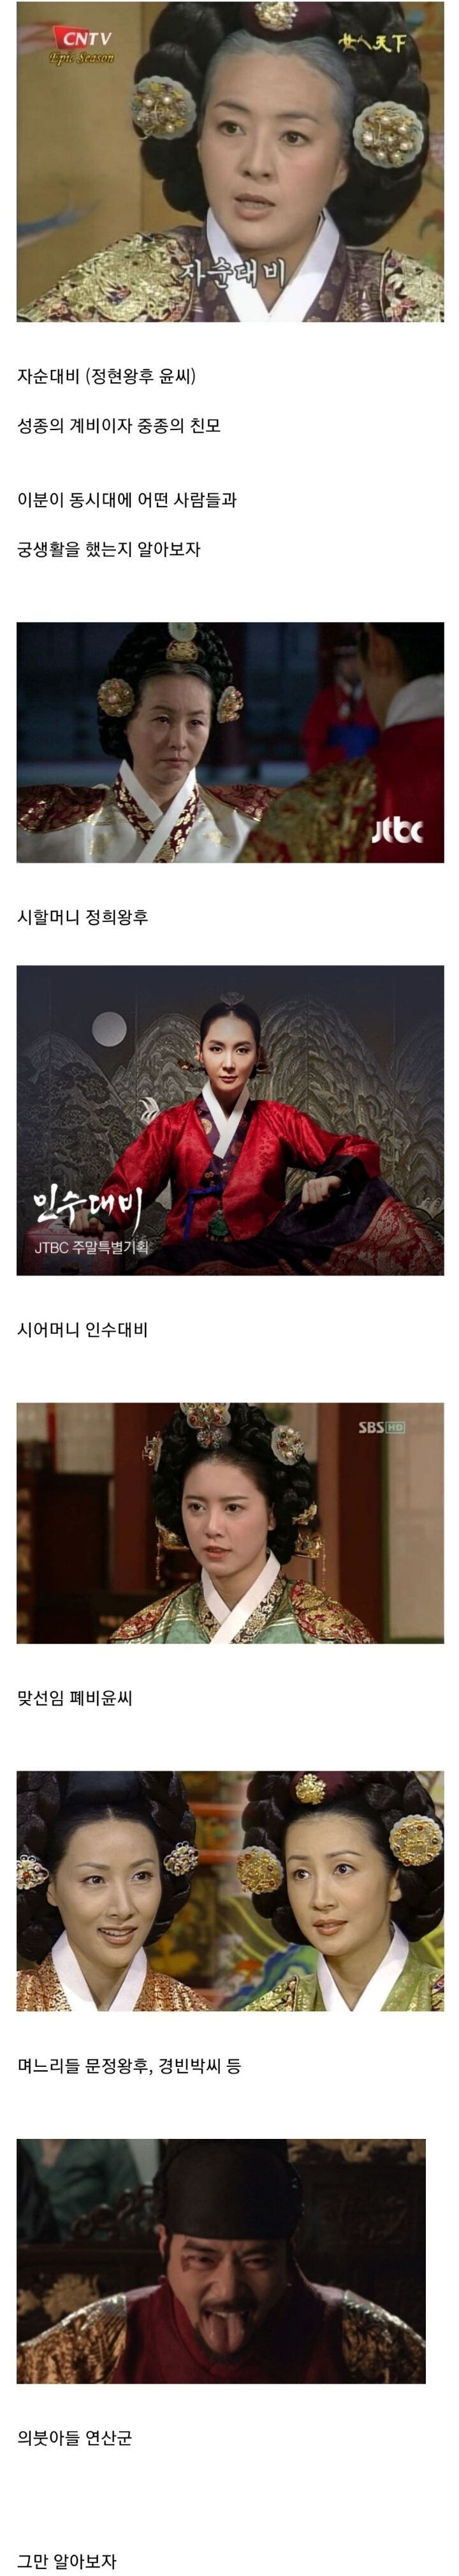 썸네일-궁생활 난이도 역대급이었던 조선의 왕비.jpg-이미지